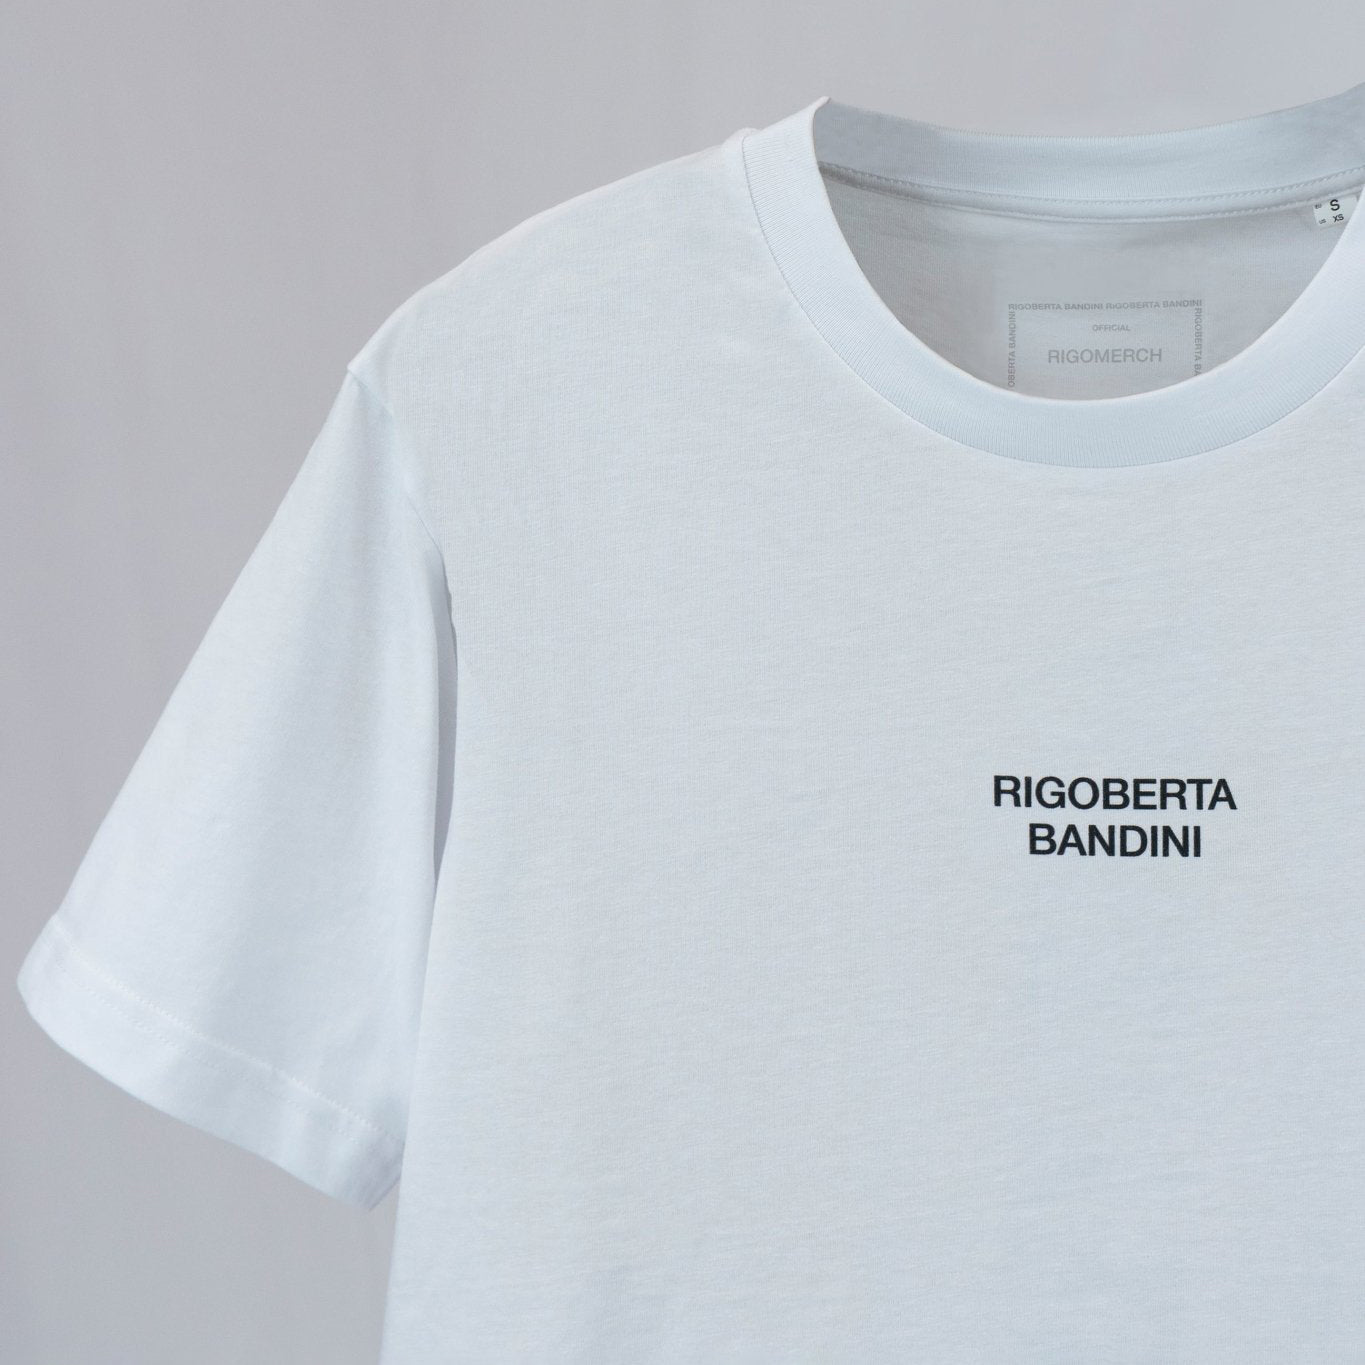 Rigoberta Bandini, Camiseta Rigoberta Bandini